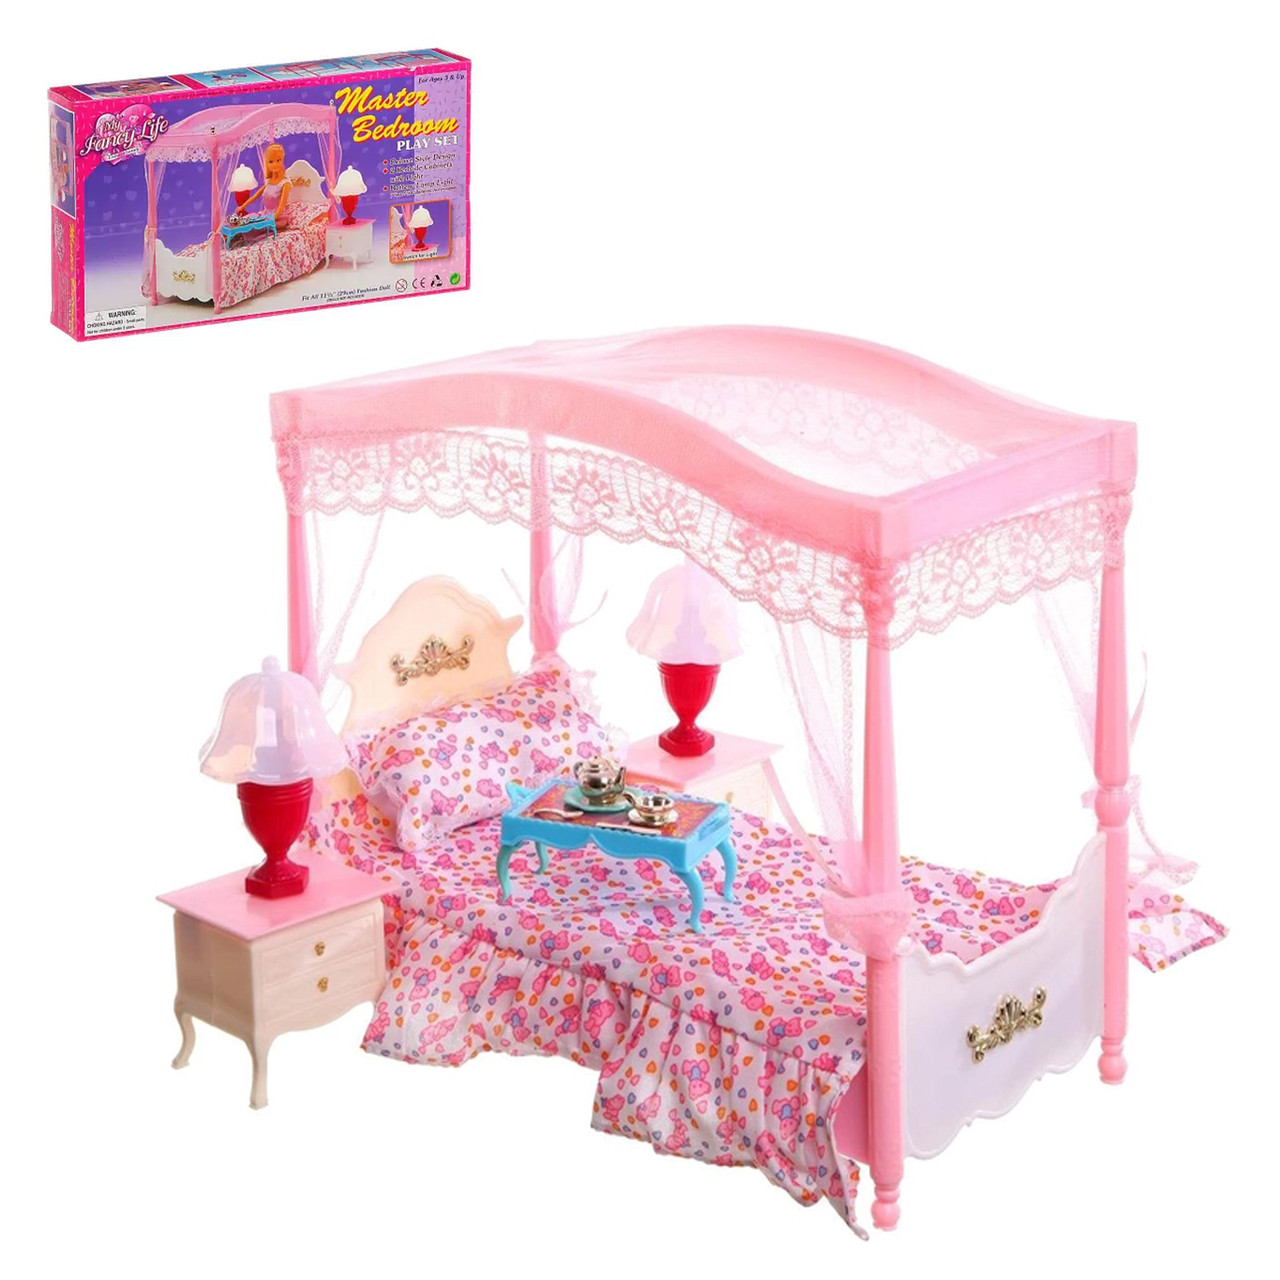 Меблі для ляльок Барбі Глорія Спальня ліжко з балдахіном тумби та світильники (2314)